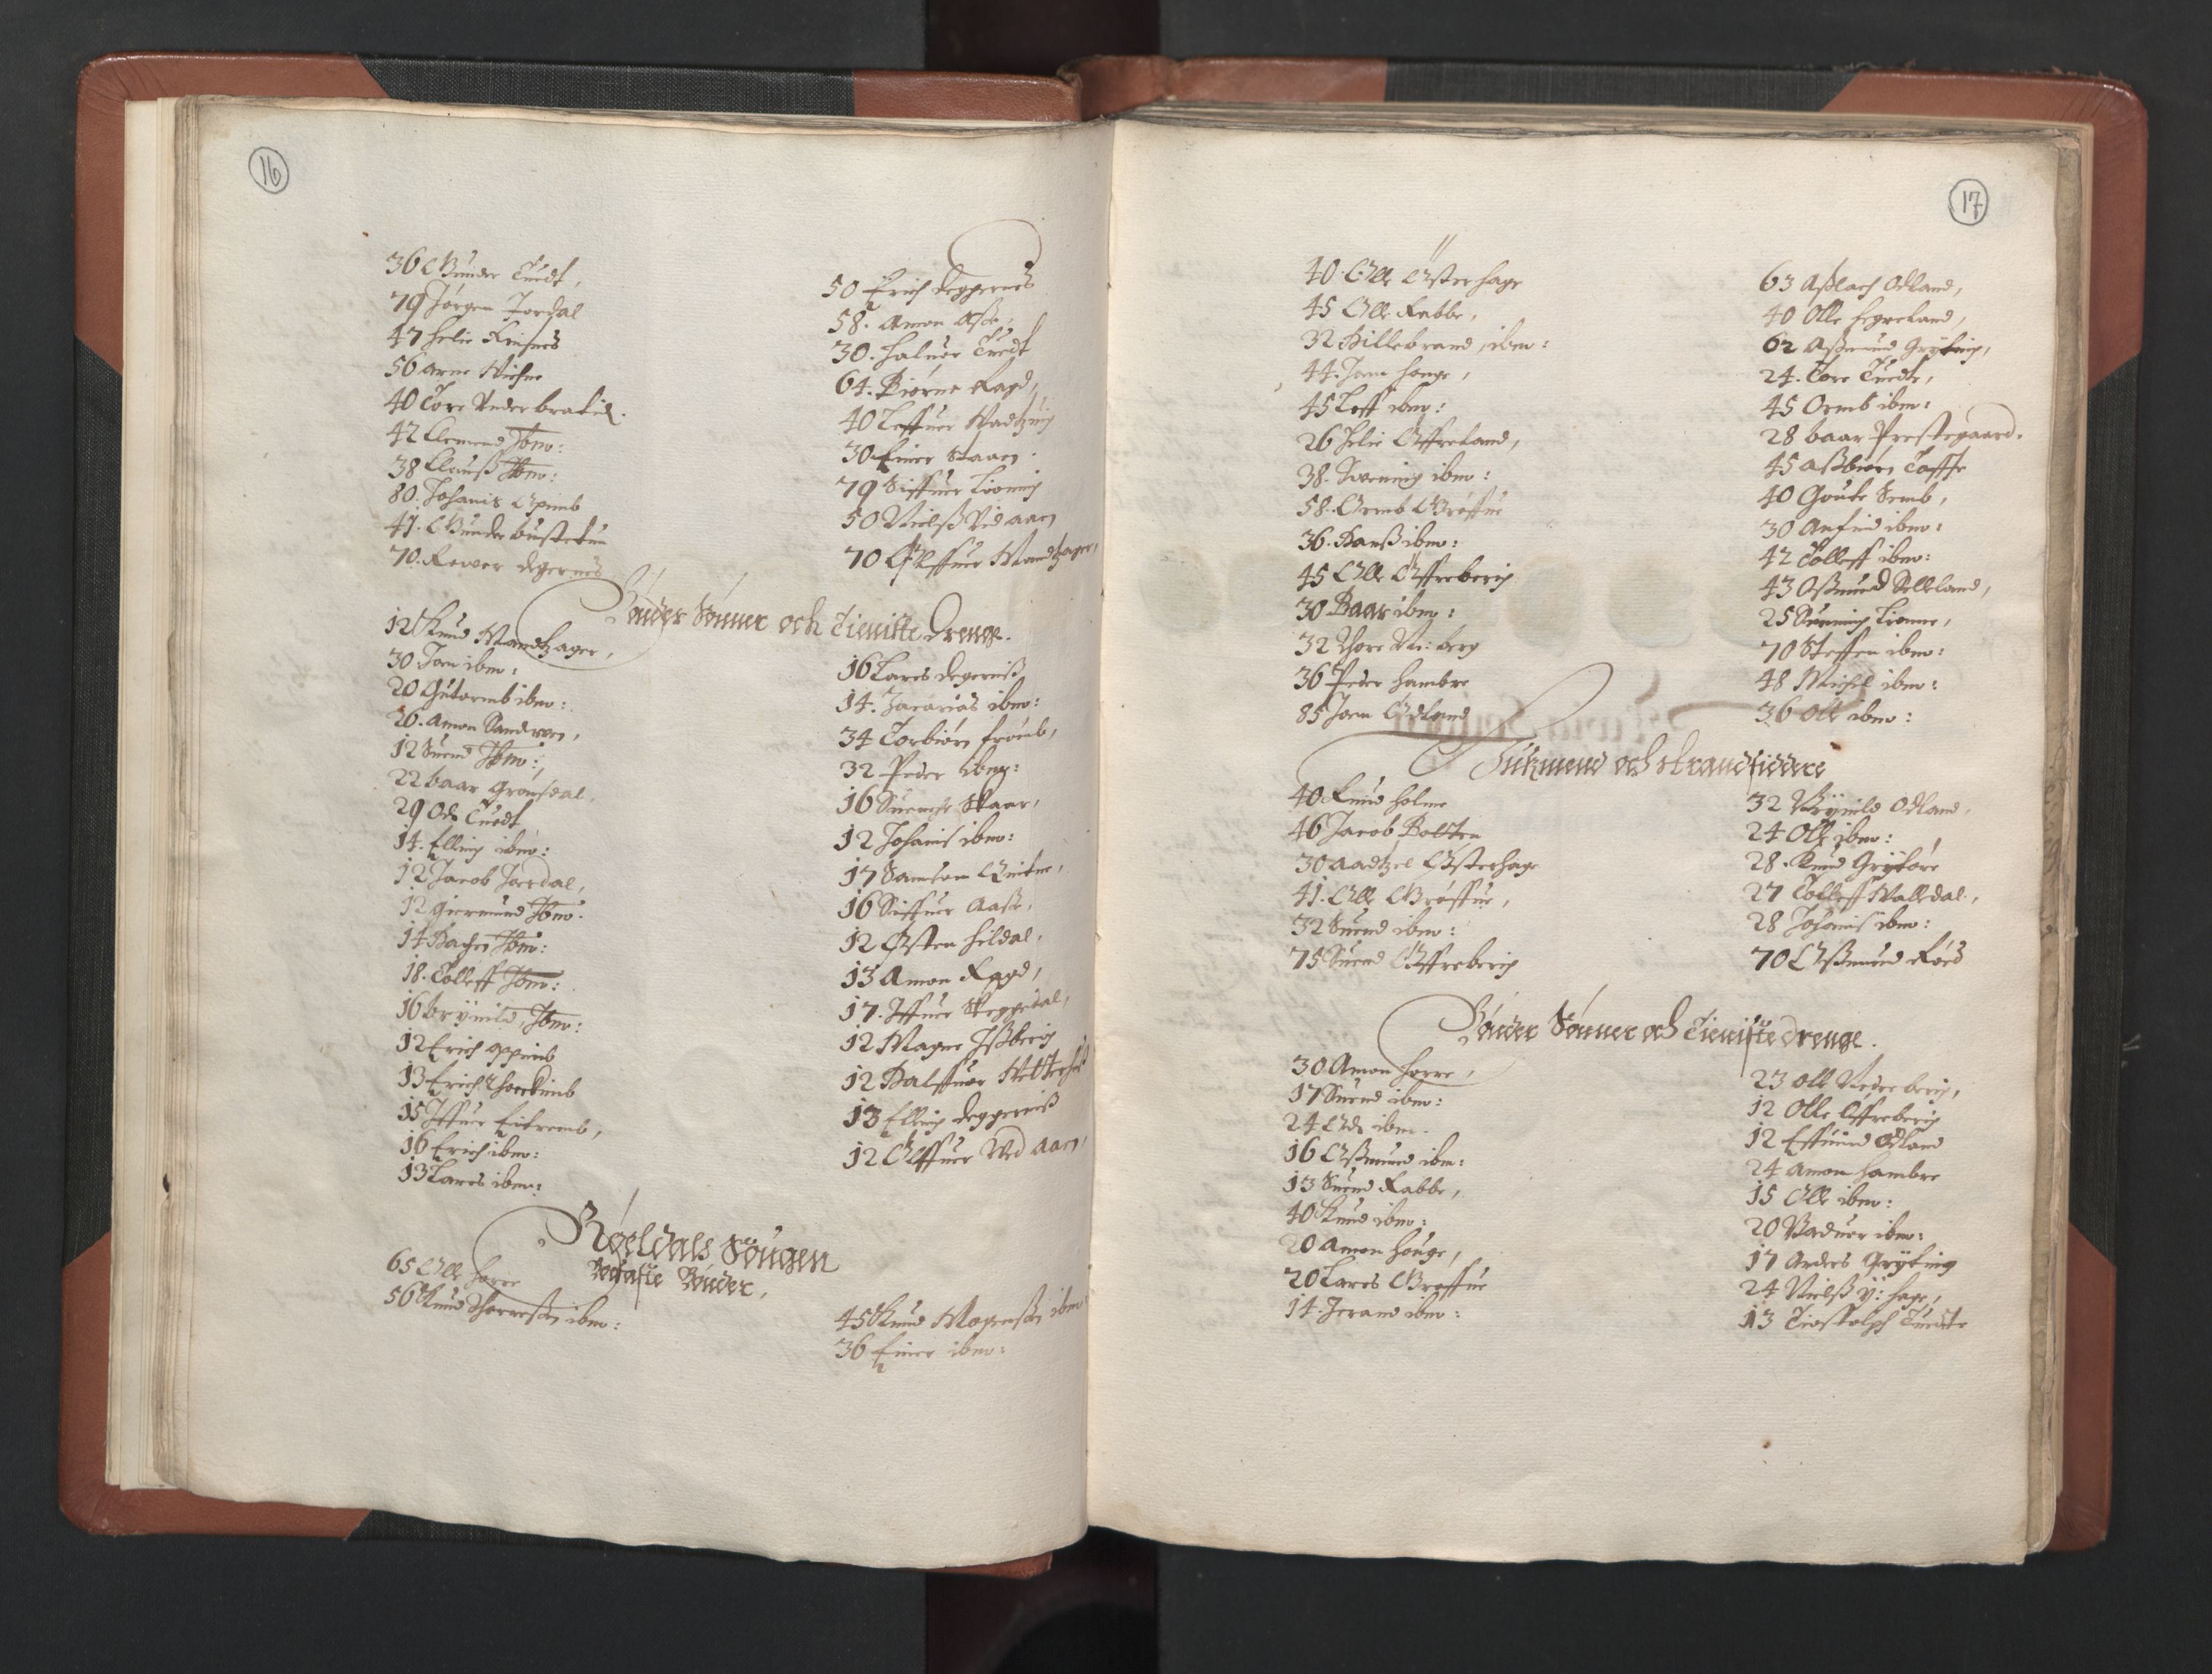 RA, Bailiff's Census 1664-1666, no. 14: Hardanger len, Ytre Sogn fogderi and Indre Sogn fogderi, 1664-1665, p. 16-17